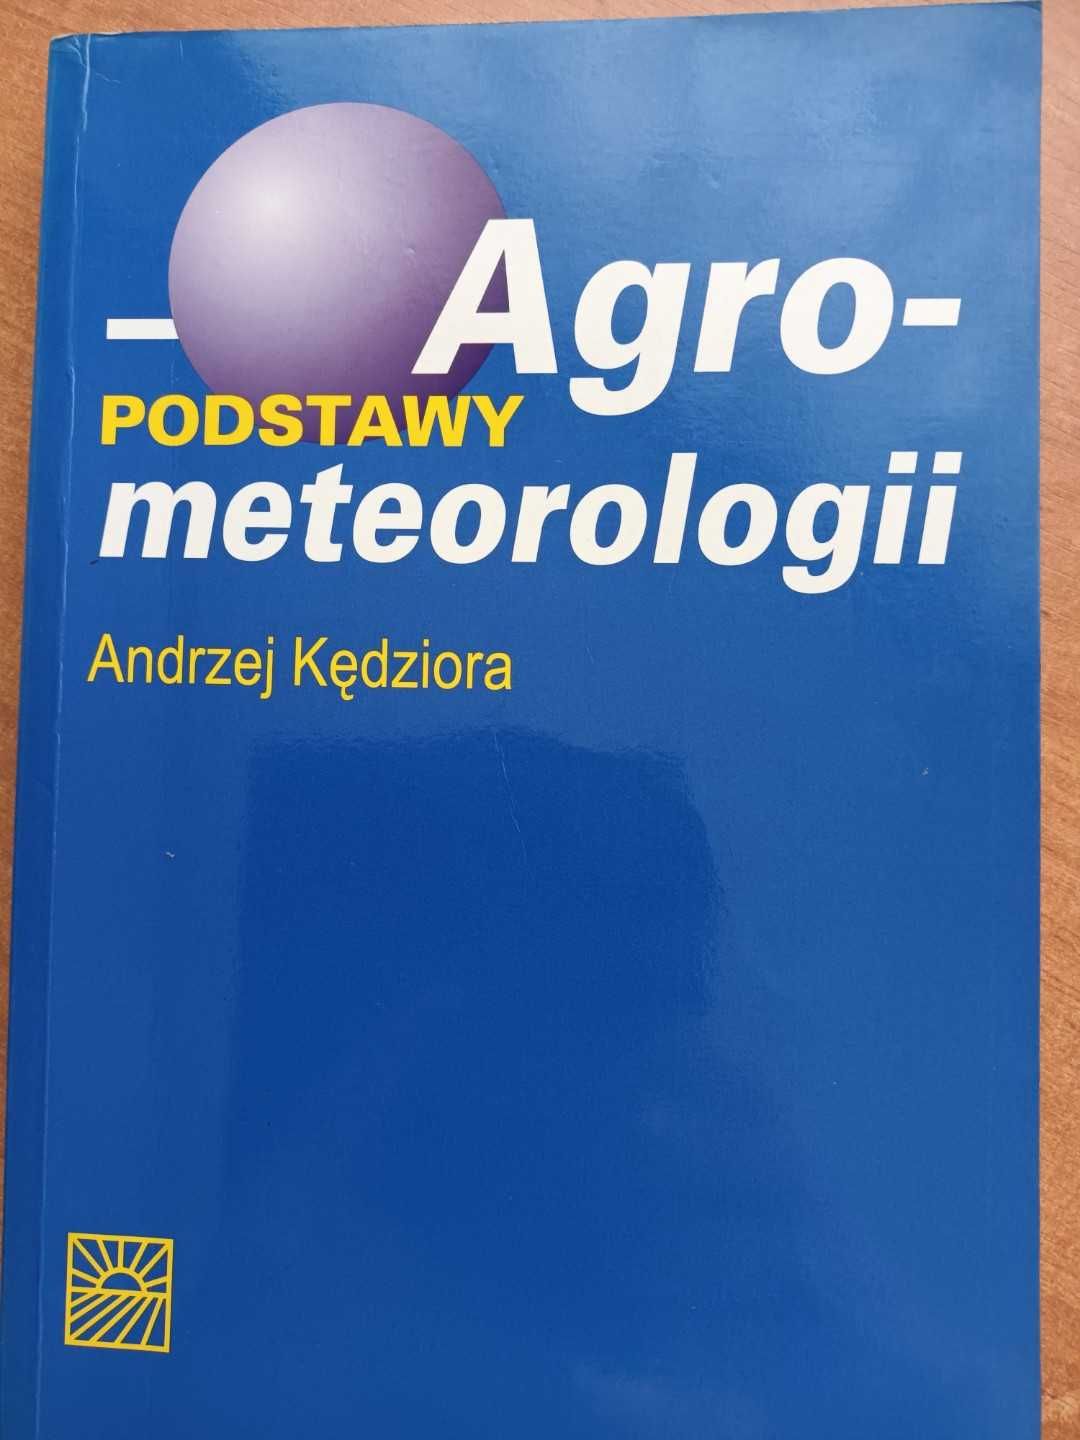 Książka "Podstawy Agrometeorologii"